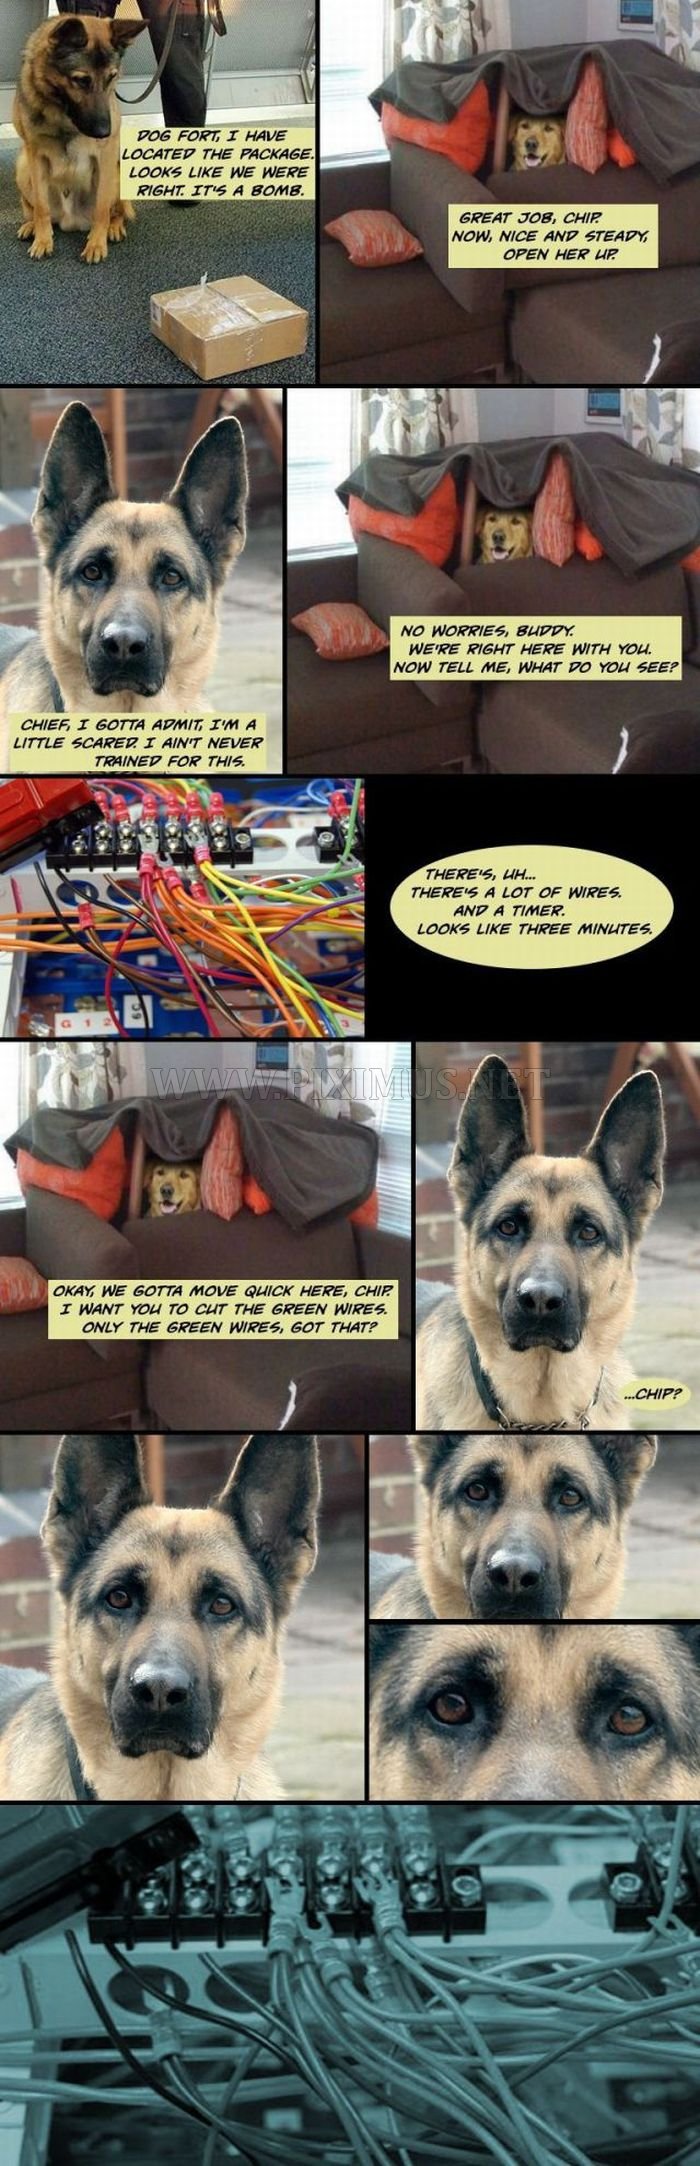 Dog Fort comics